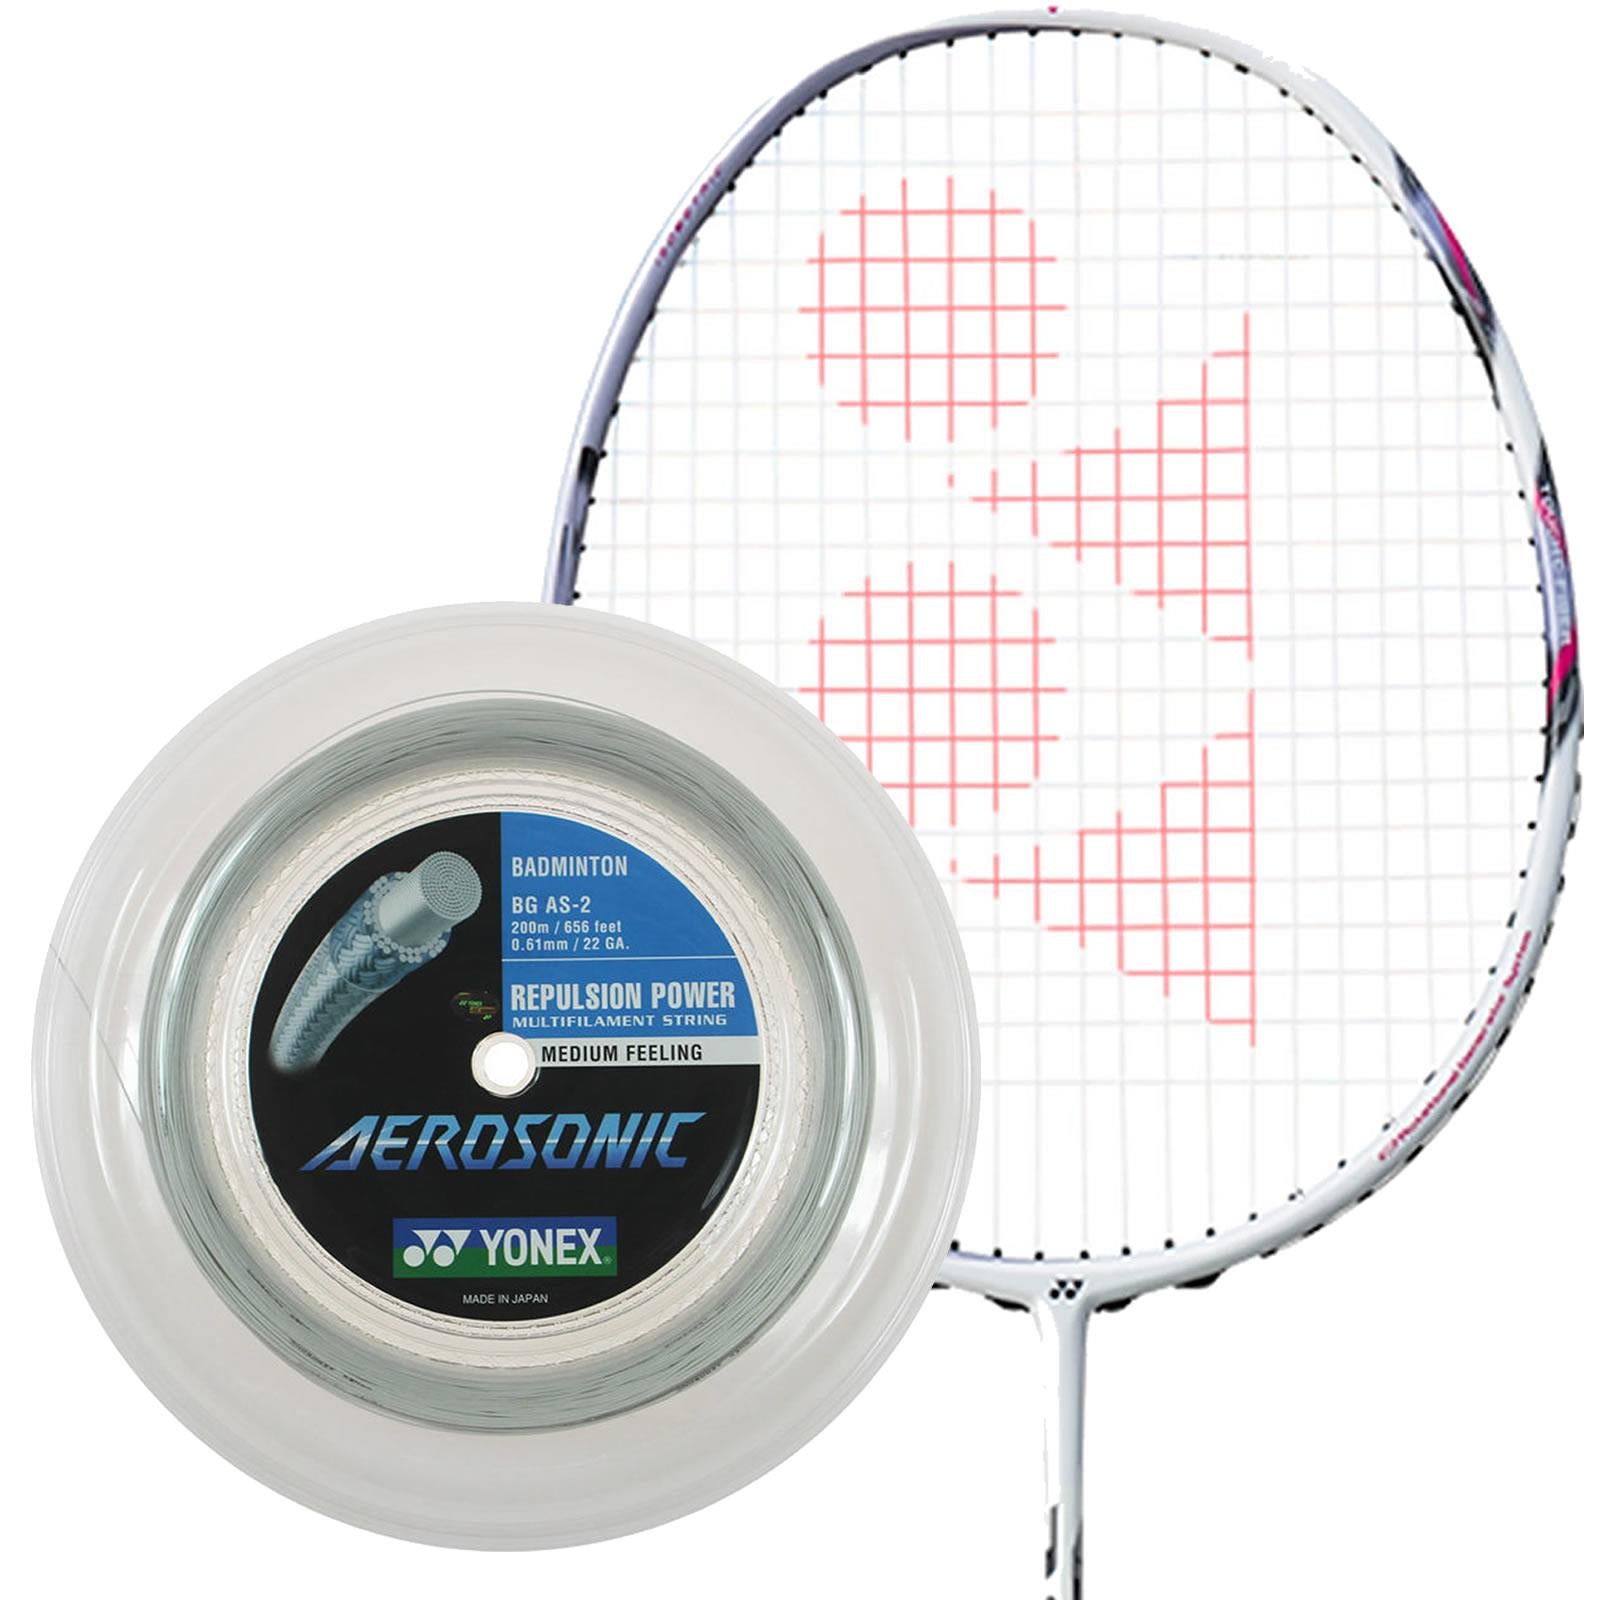 Yonex Aerosonic Badminton String White - 0.61mm 200m Reel